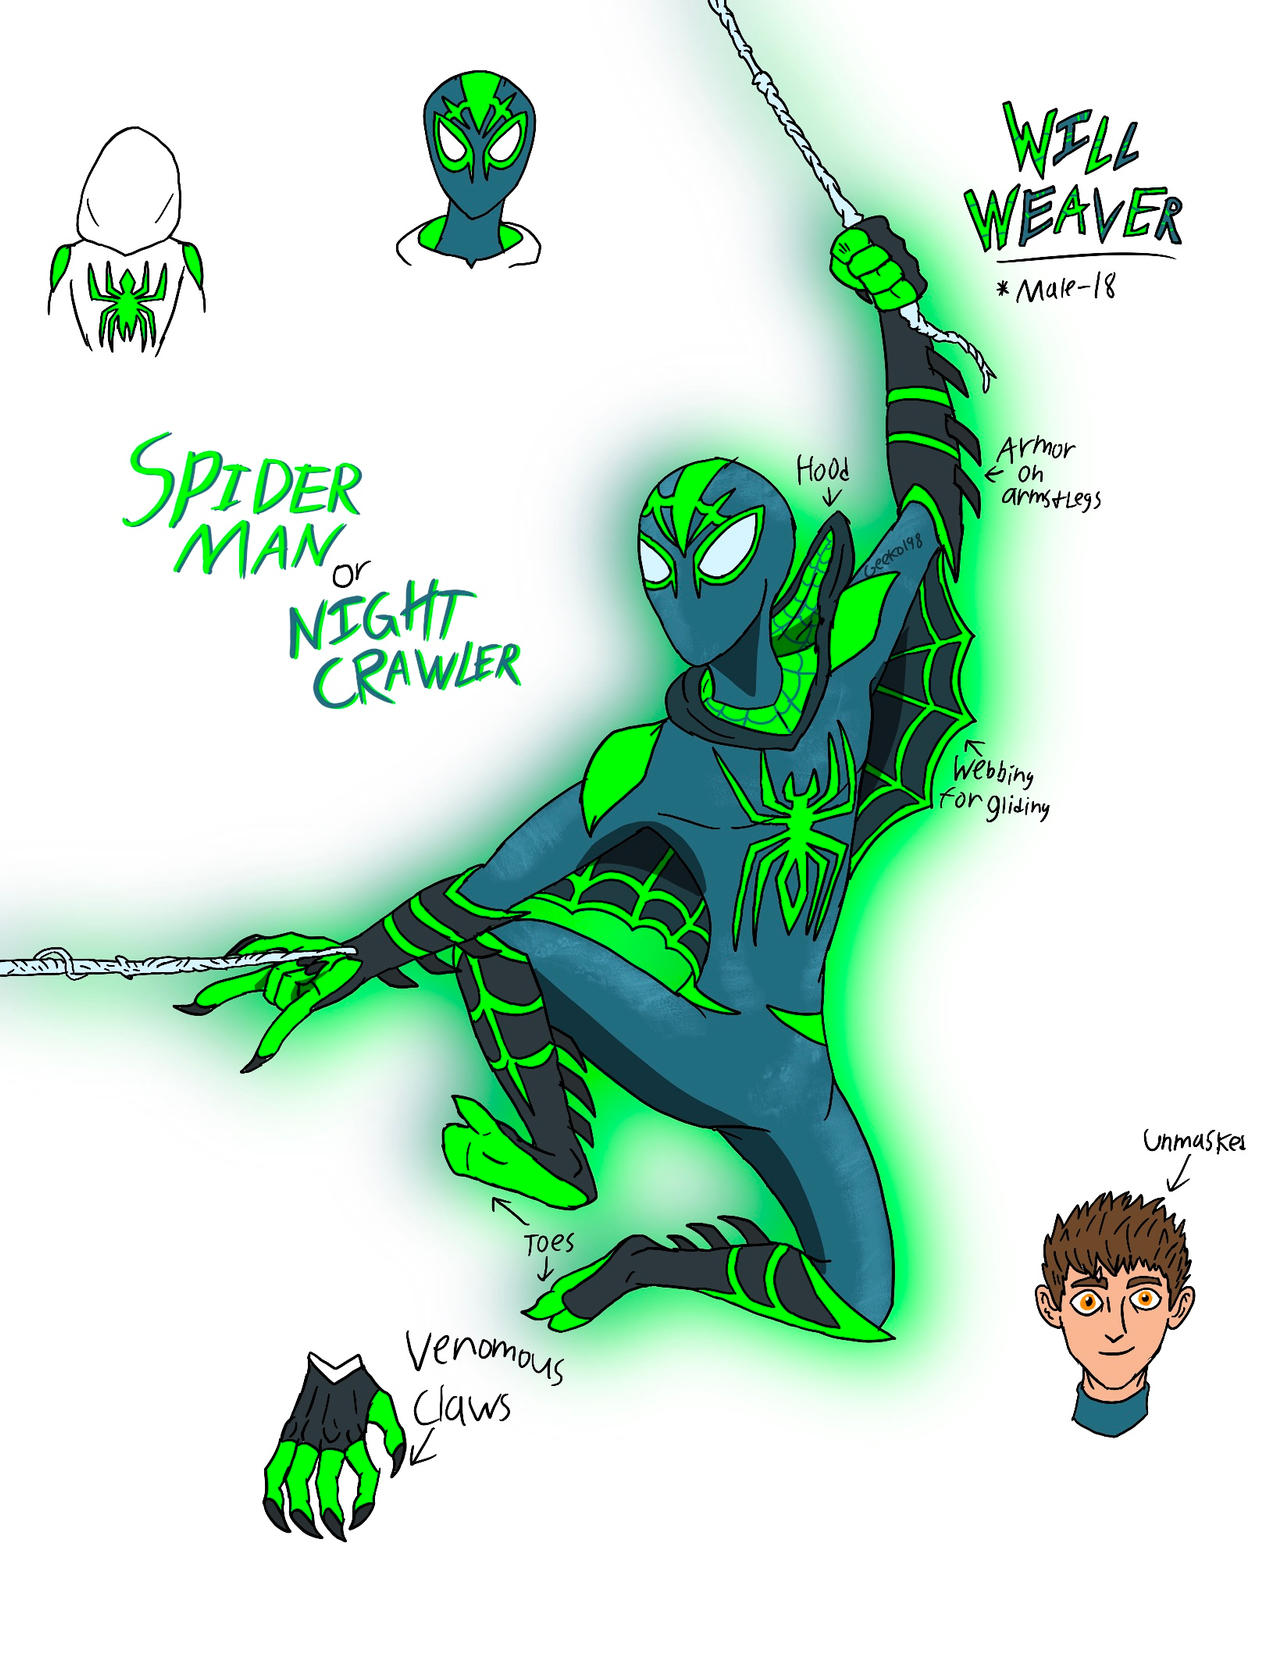 Spidersona: Night Crawling Spider Man by Geeko1968 on DeviantArt